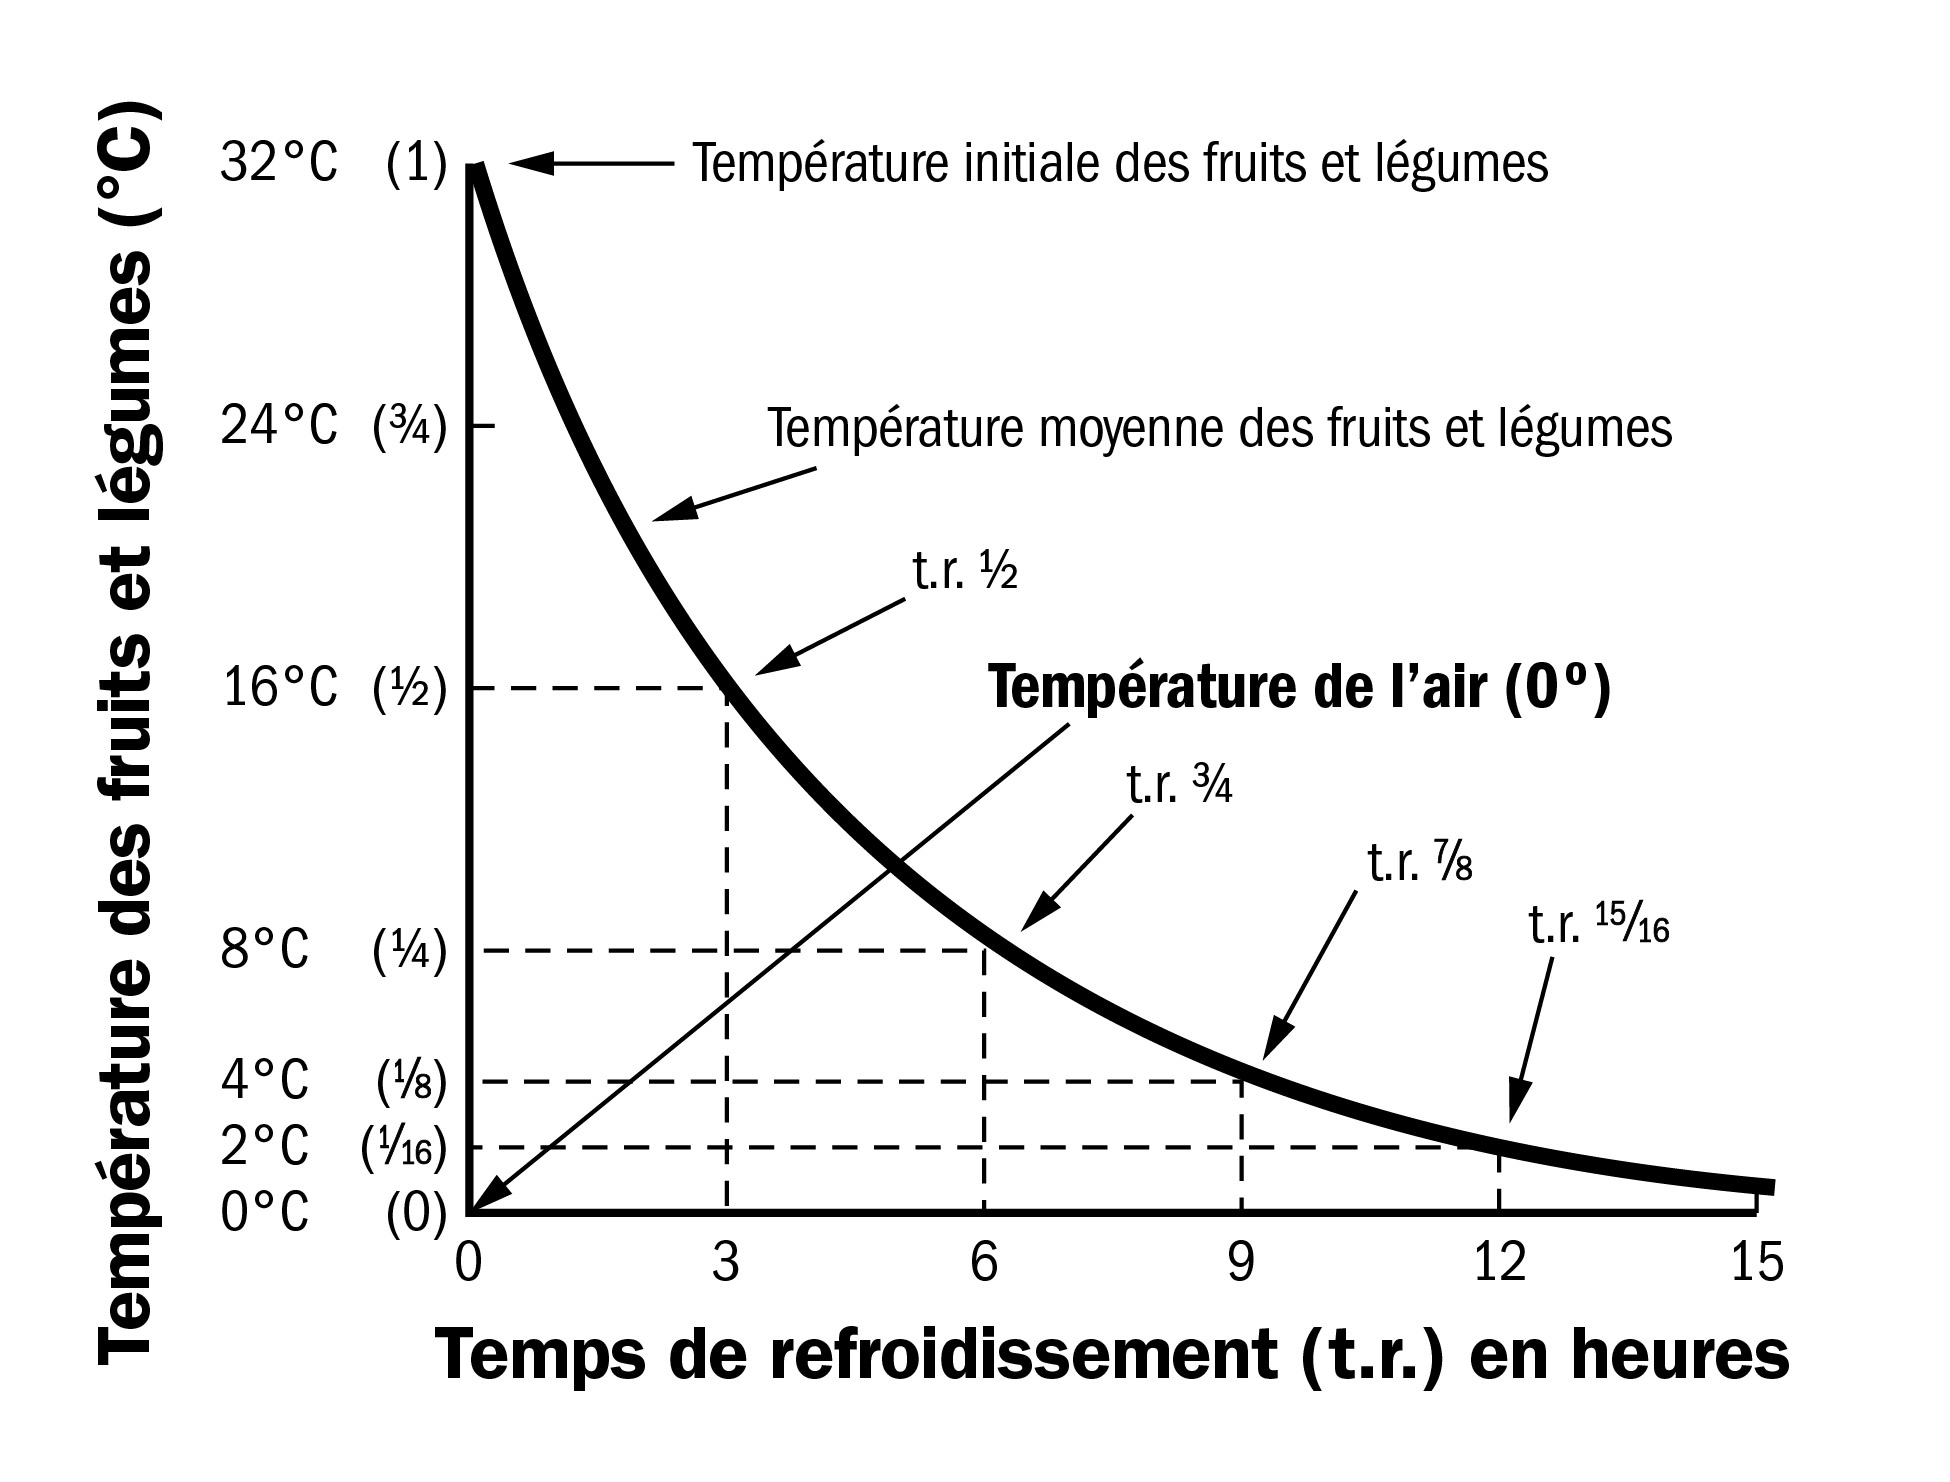 Un graphique. L’axe des «  y  » indique les températures internes des fruits ou des légumes, de 0 à 32 degrés Celsius. L’axe des «  x  » indique les heures, de 0 à 15. Une courbe lisse descendant de gauche à droite montre comment la température des fruits ou des légumes baisse avec le temps, avec un refroidissement rapide au début et plus lent par la suite. Les temps de refroidissement 1/2, de refroidissement 3/4, de refroidissement 7/8 et de refroidissement 15/16 sont mis en évidence